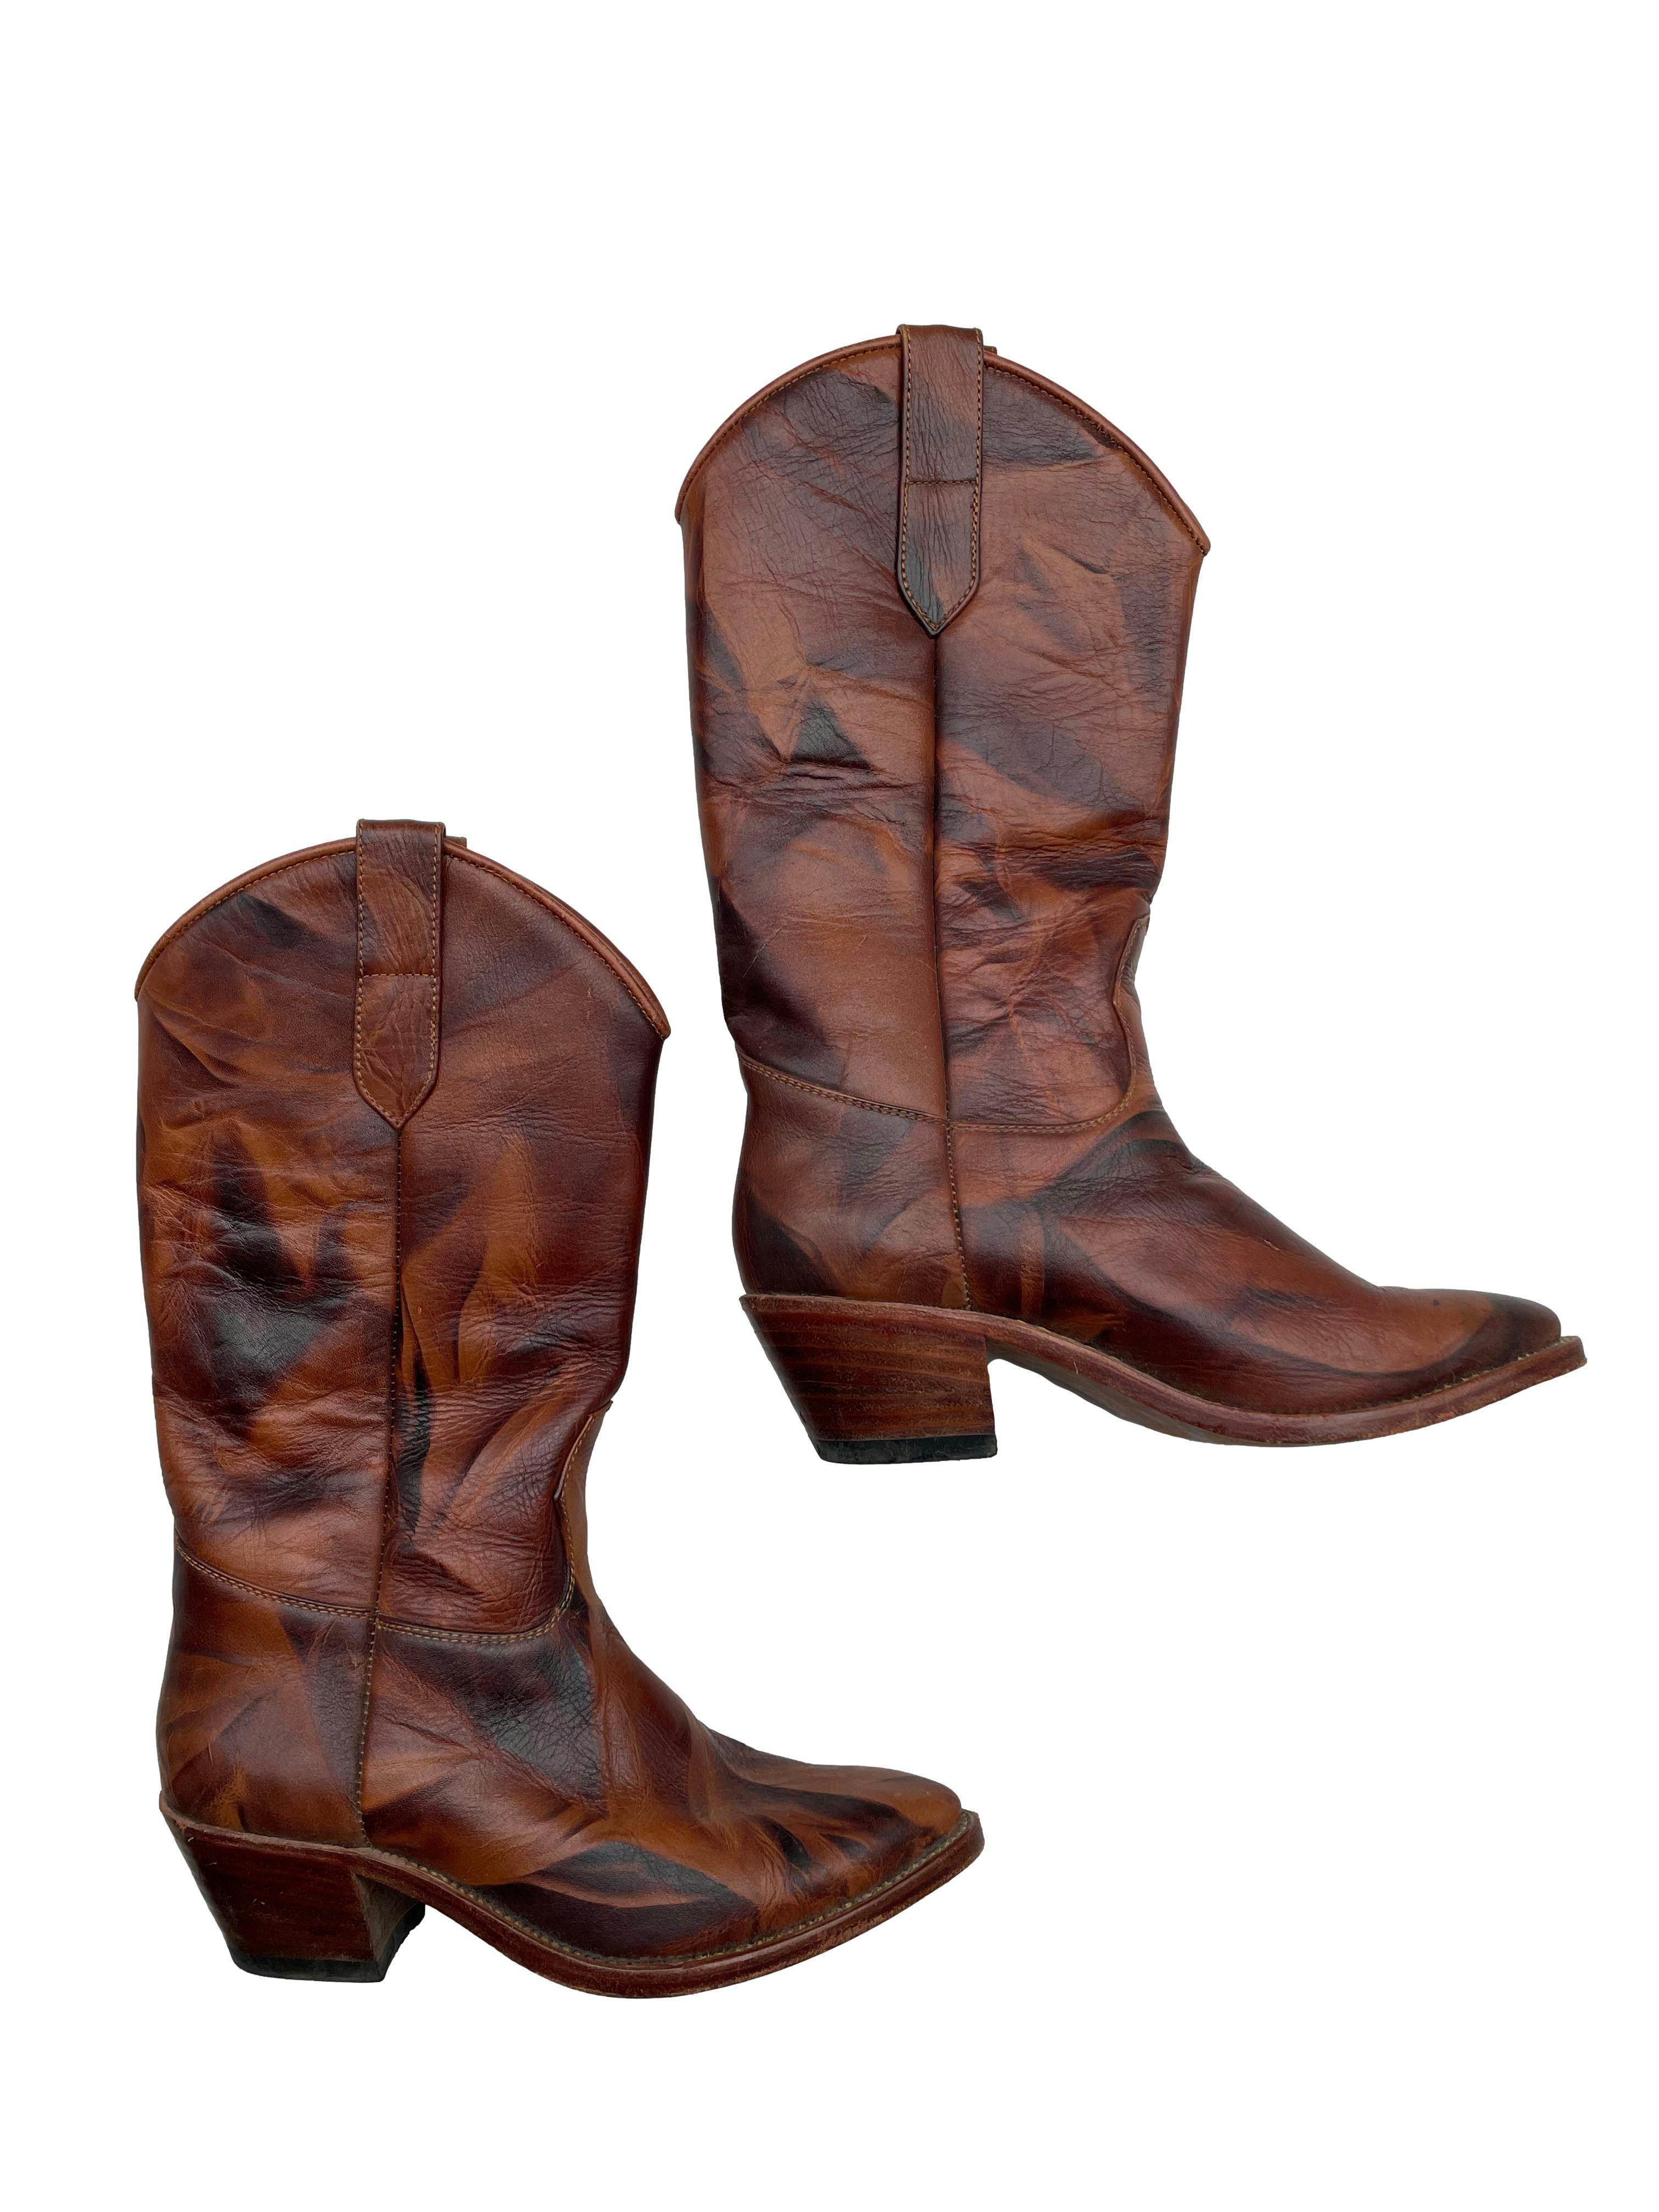 Cow girl boot de cuero marrón marmoleado, taco 5cm. Estado 9/10. Requiere comprar plantillas. Precio original S/ 650